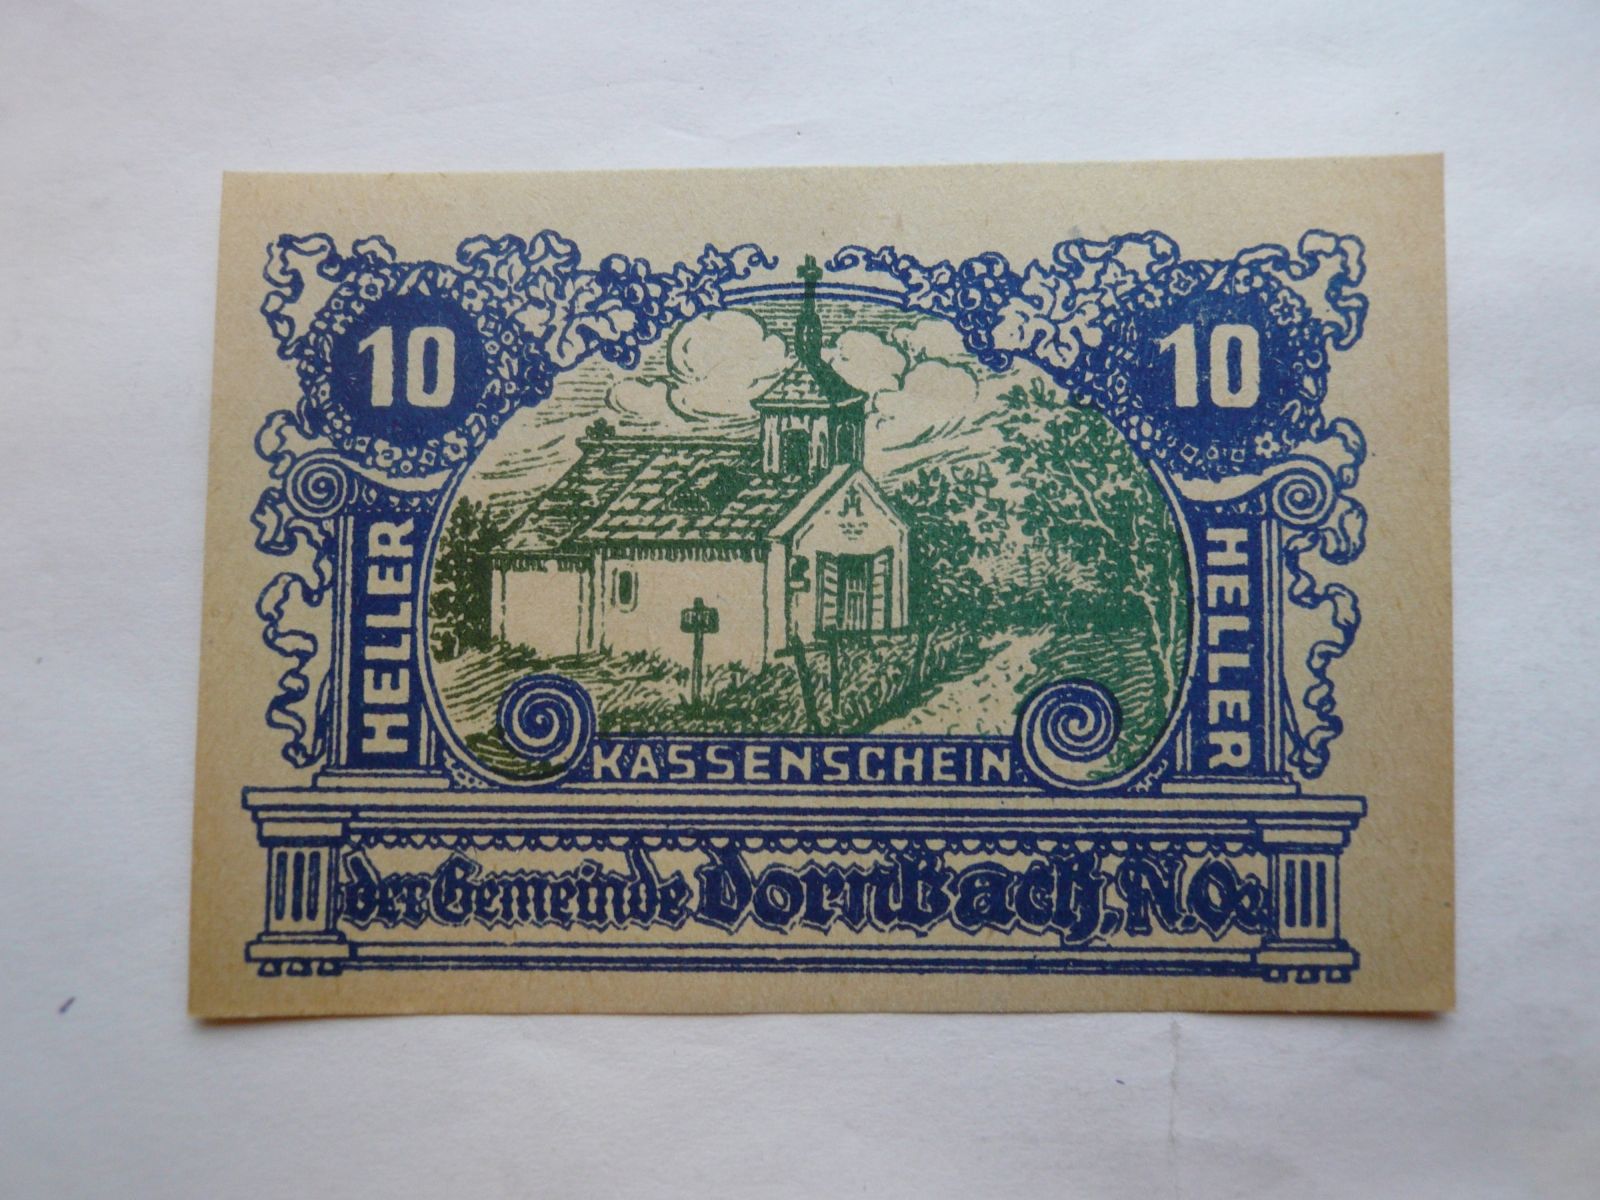 10 Heller, Kassenschein, Rakousko